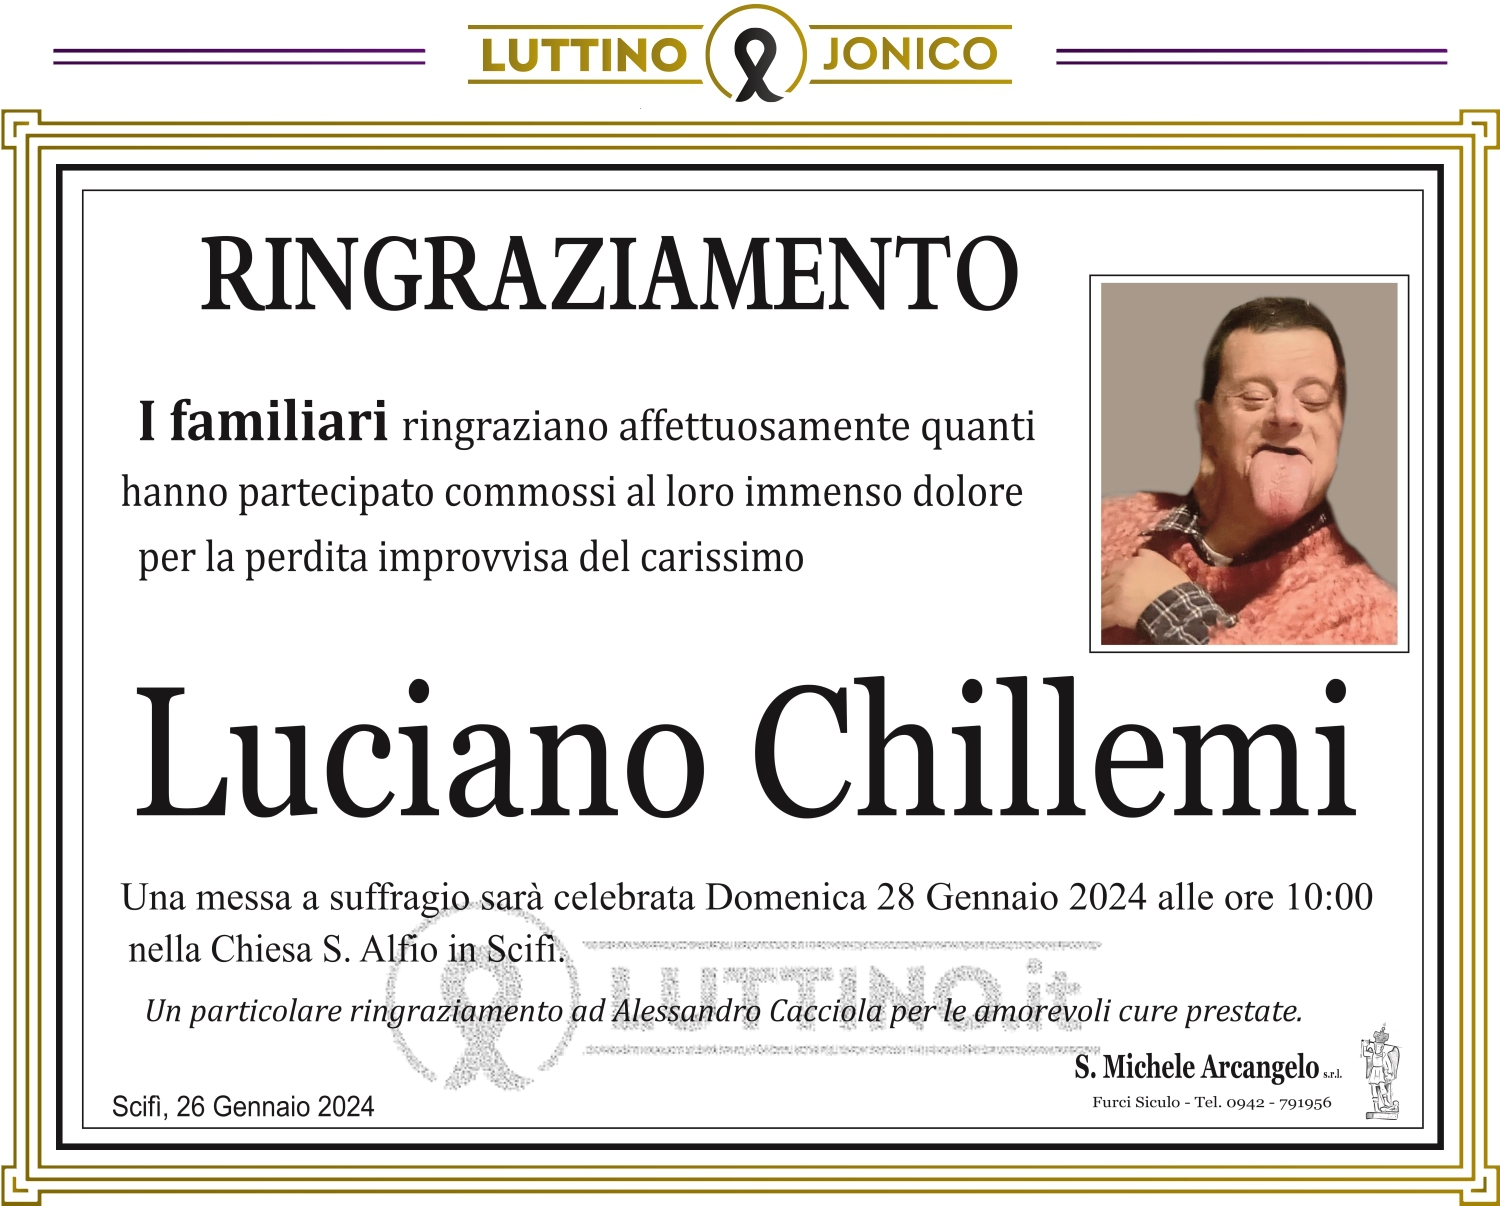 Luciano Chillemi